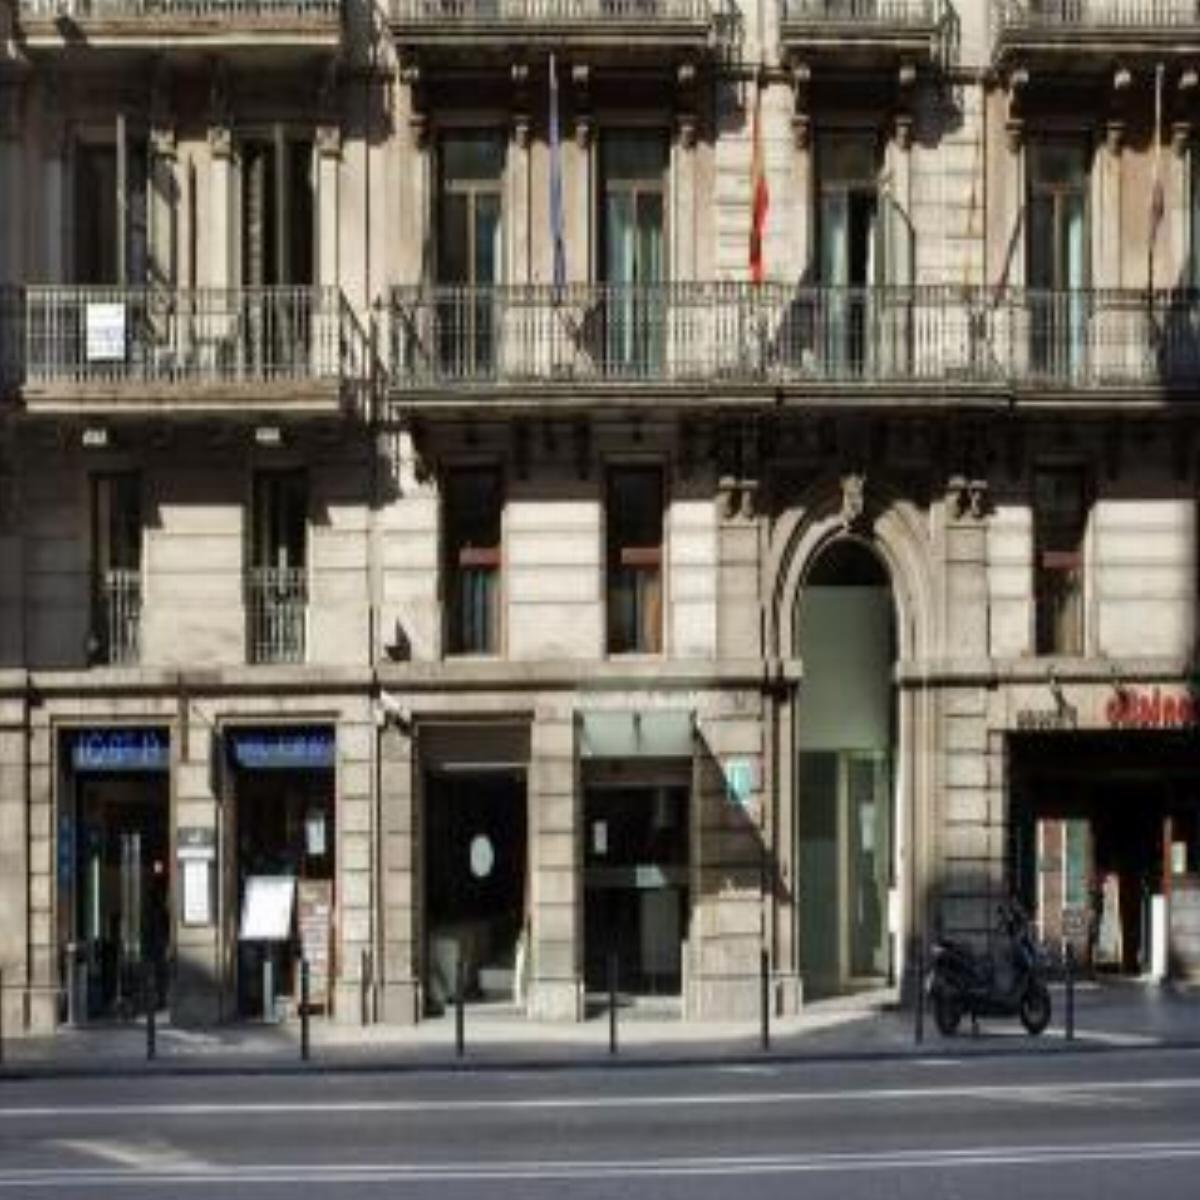 Ilunion Almirante Hotel Barcelona Spain